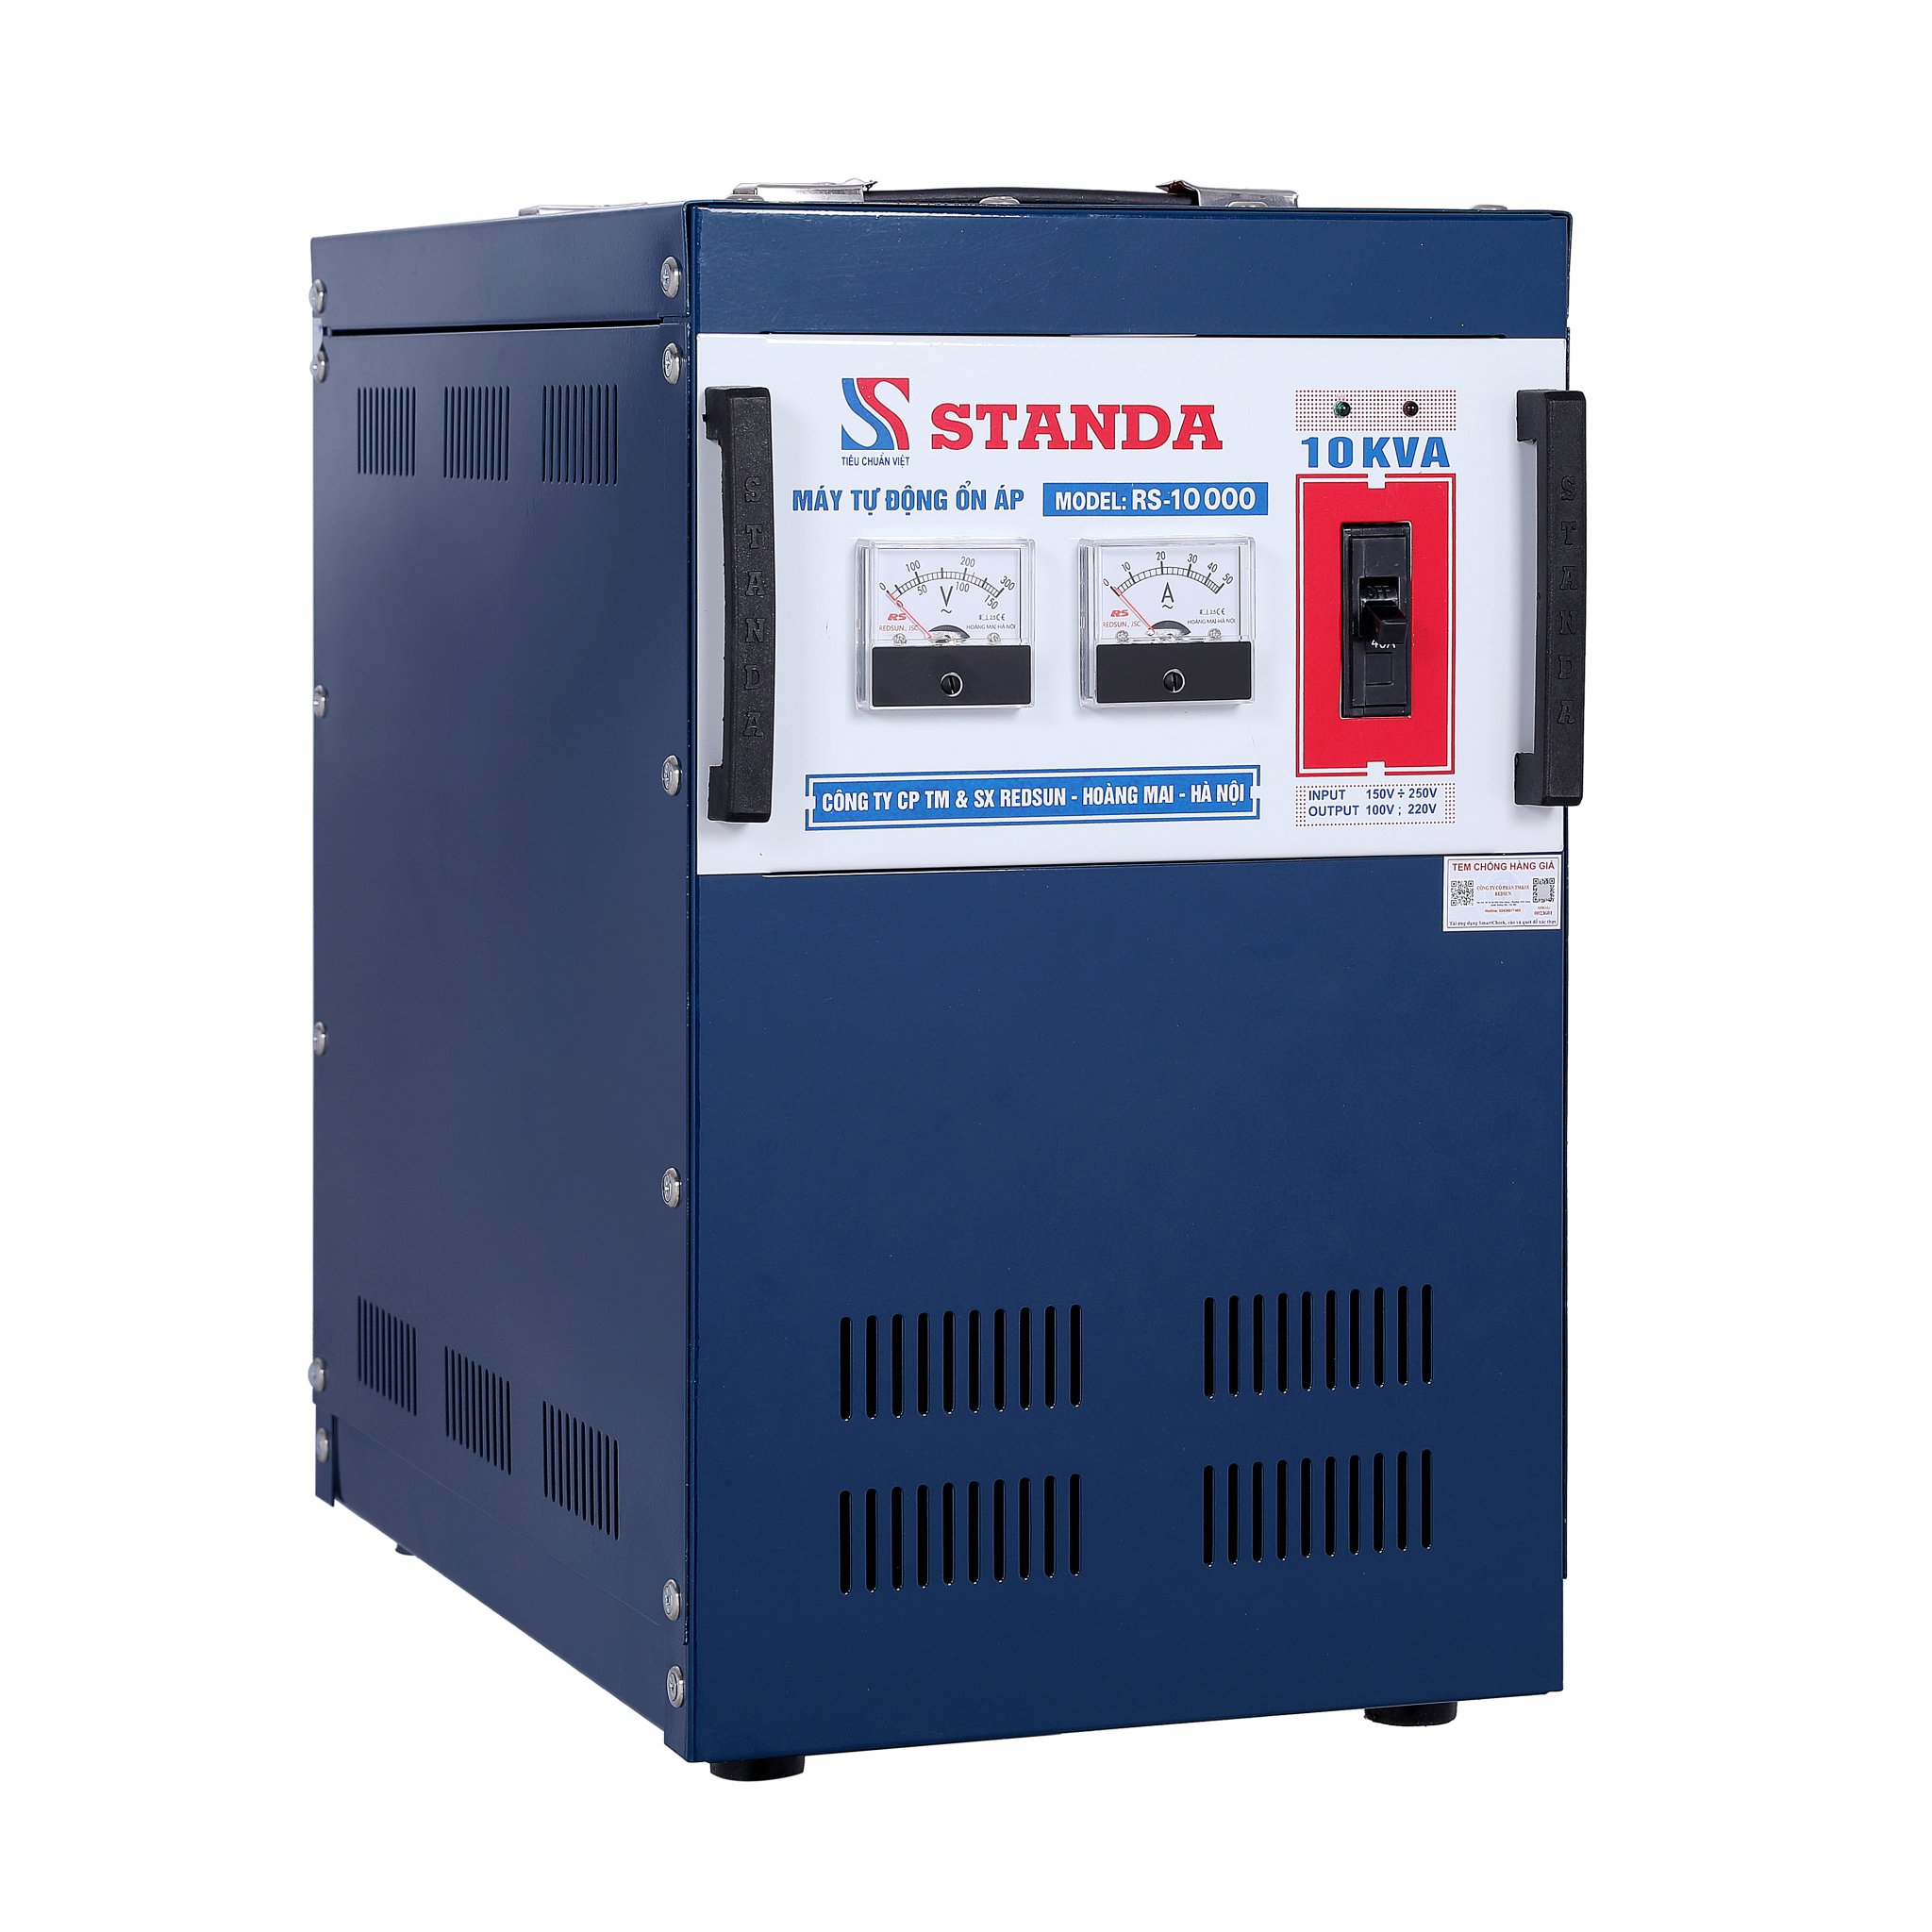 Ổn áp đa chức năng Standa CS10000, dải 90 - 250